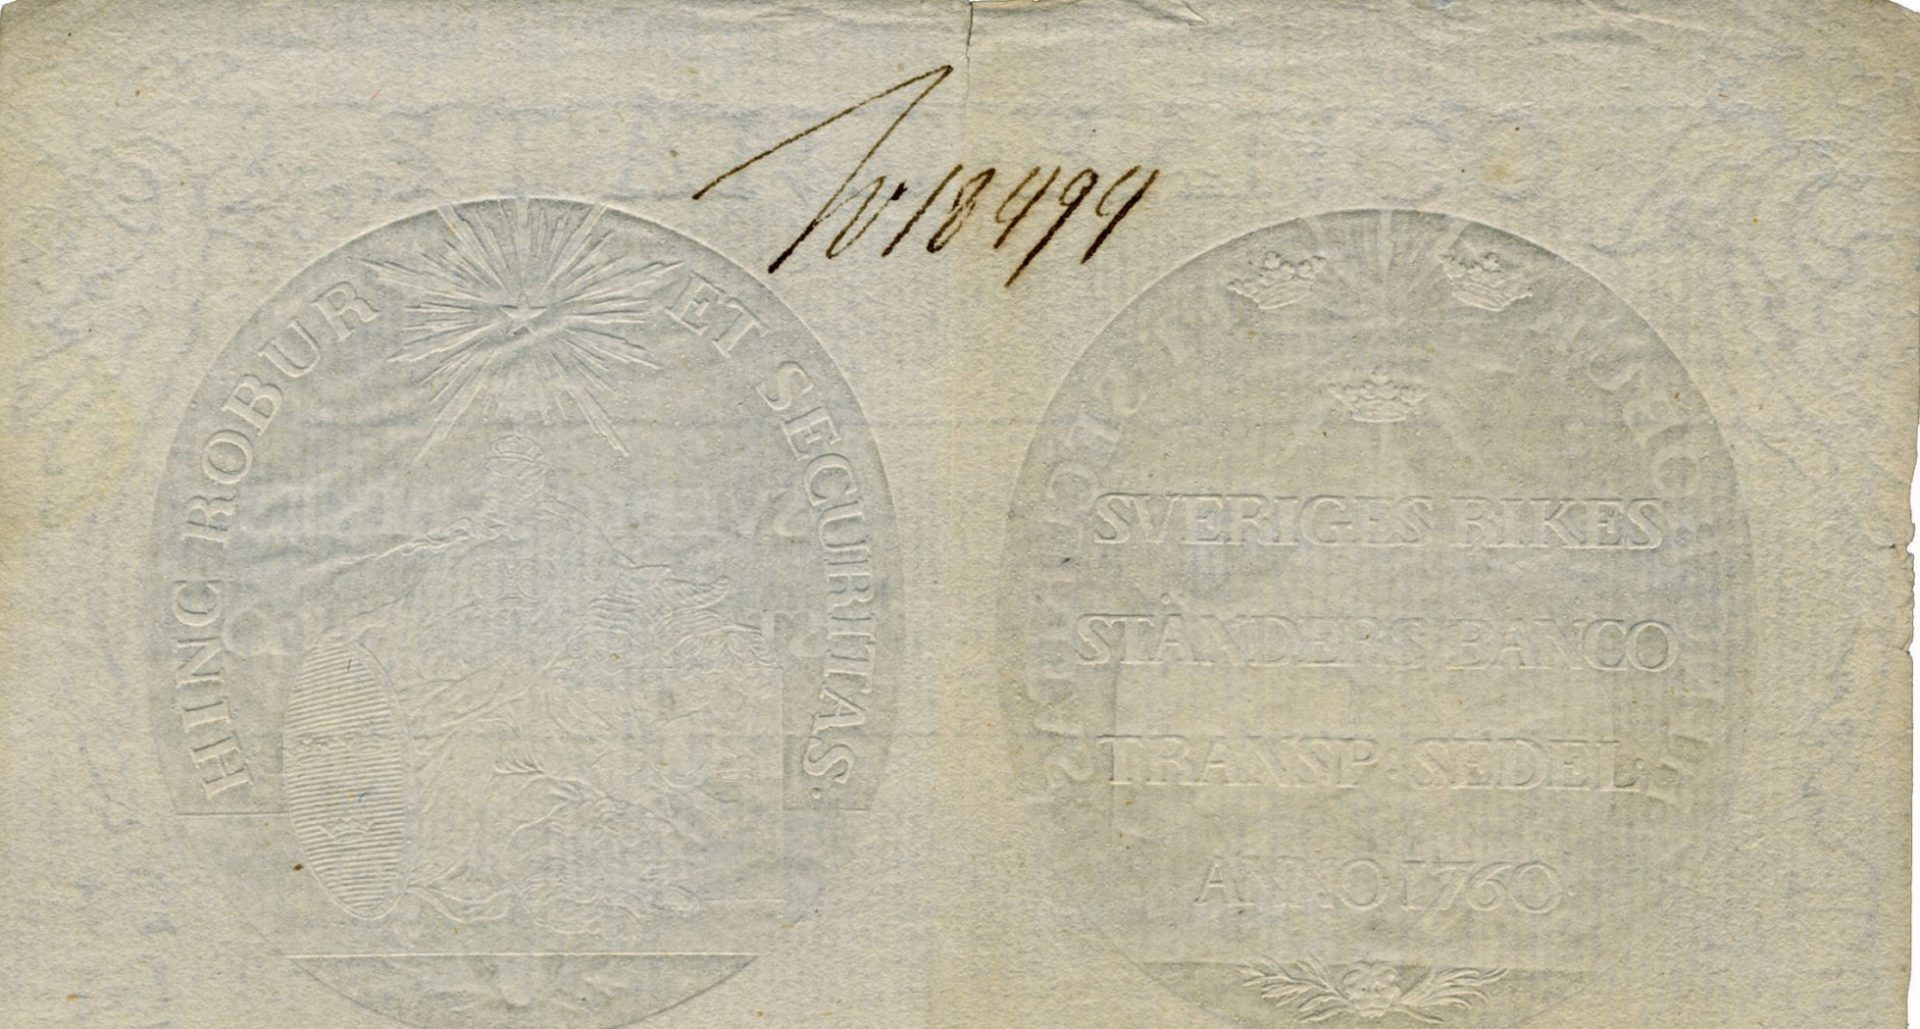 sedelpapper med vattenstämpel, text och årtalet 1760